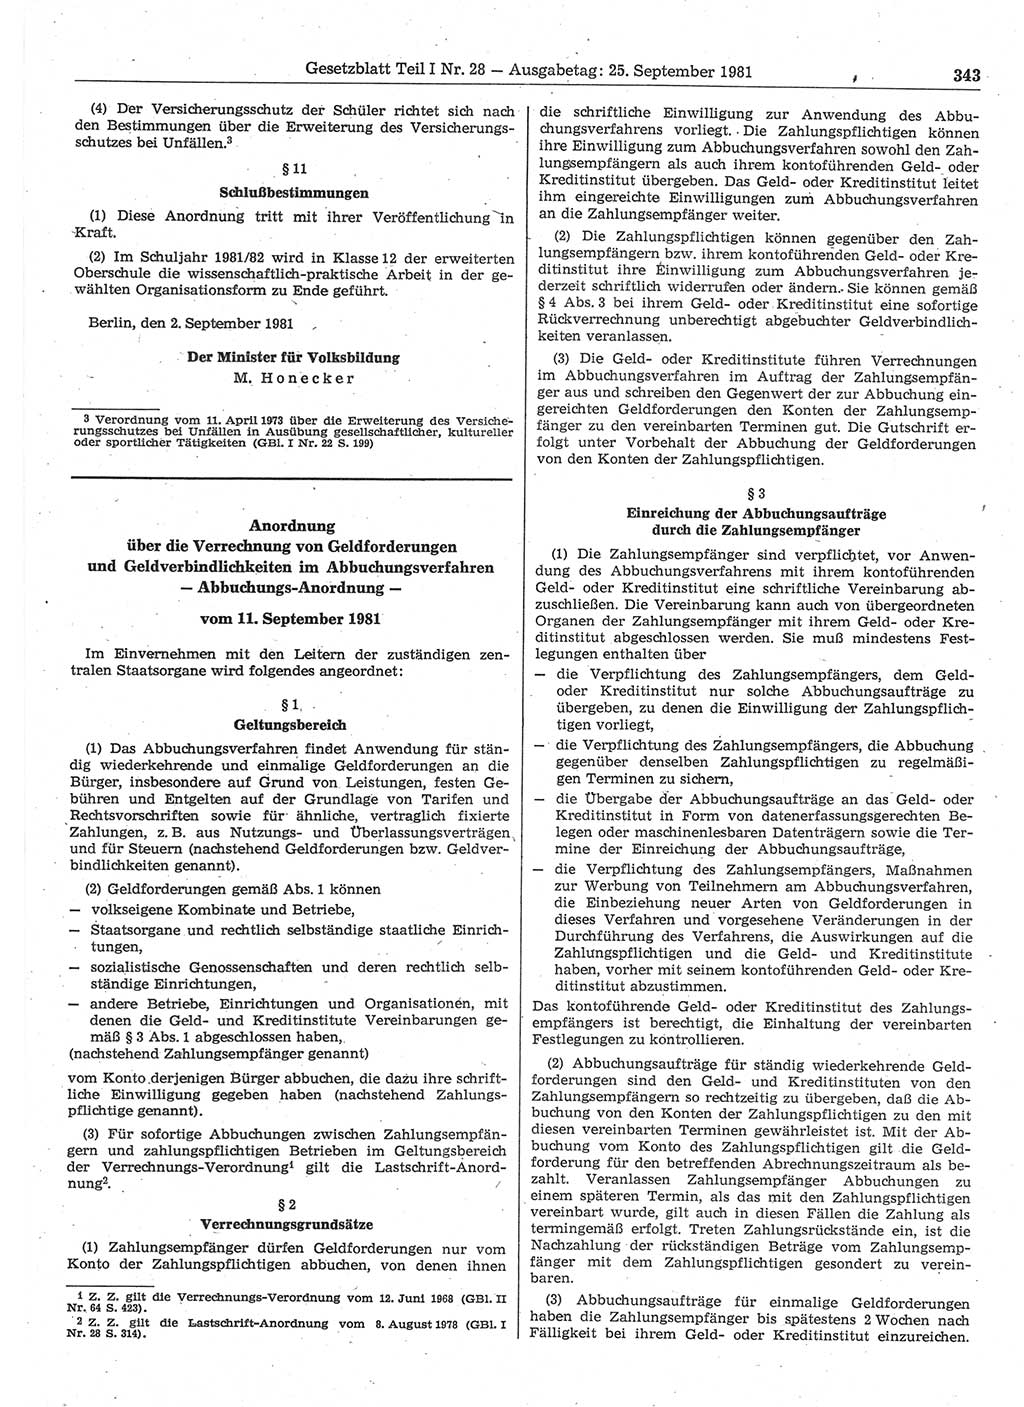 Gesetzblatt (GBl.) der Deutschen Demokratischen Republik (DDR) Teil Ⅰ 1981, Seite 343 (GBl. DDR Ⅰ 1981, S. 343)